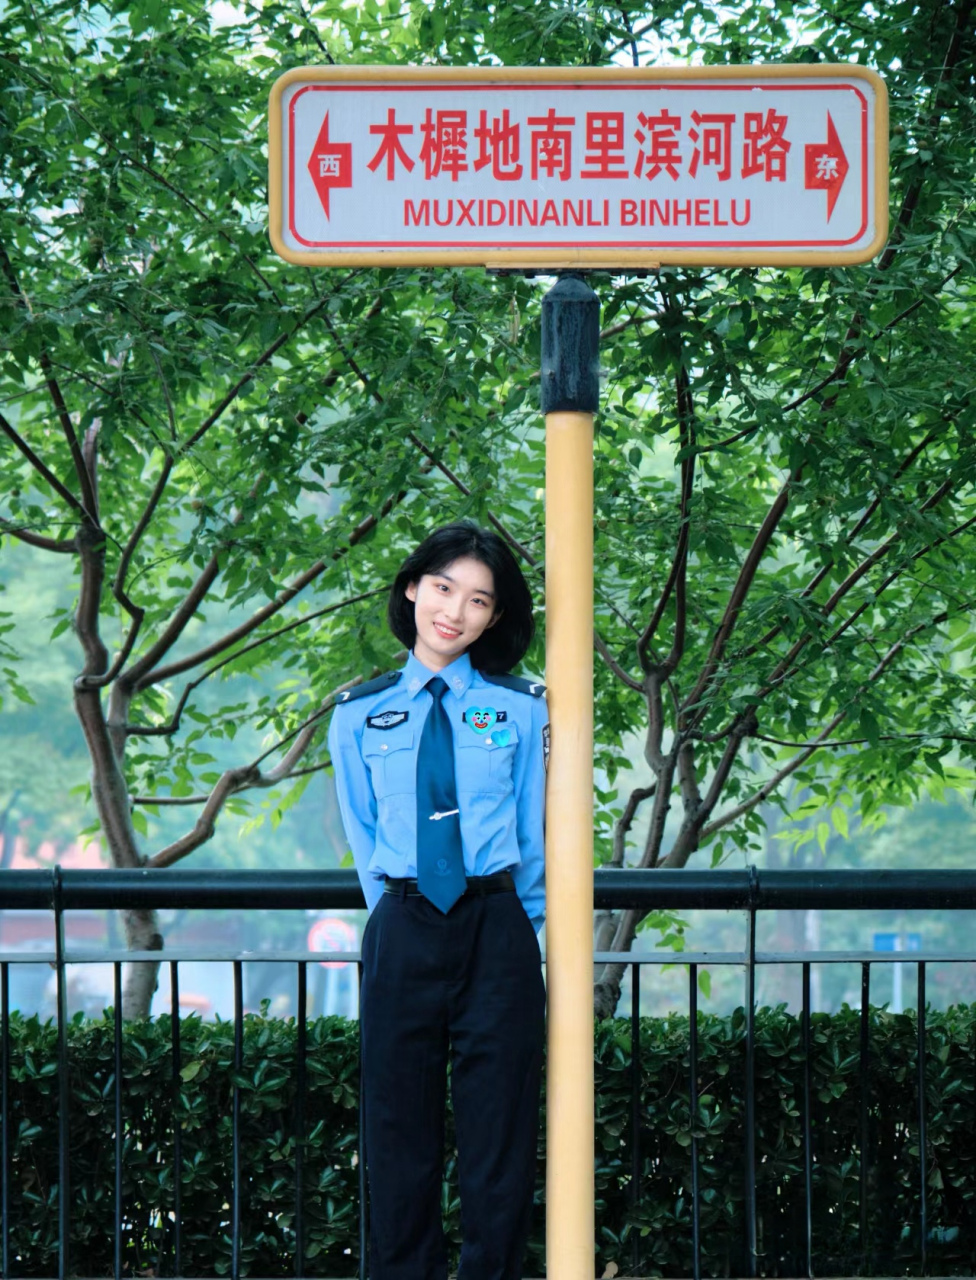 中国警花 公安大学图片